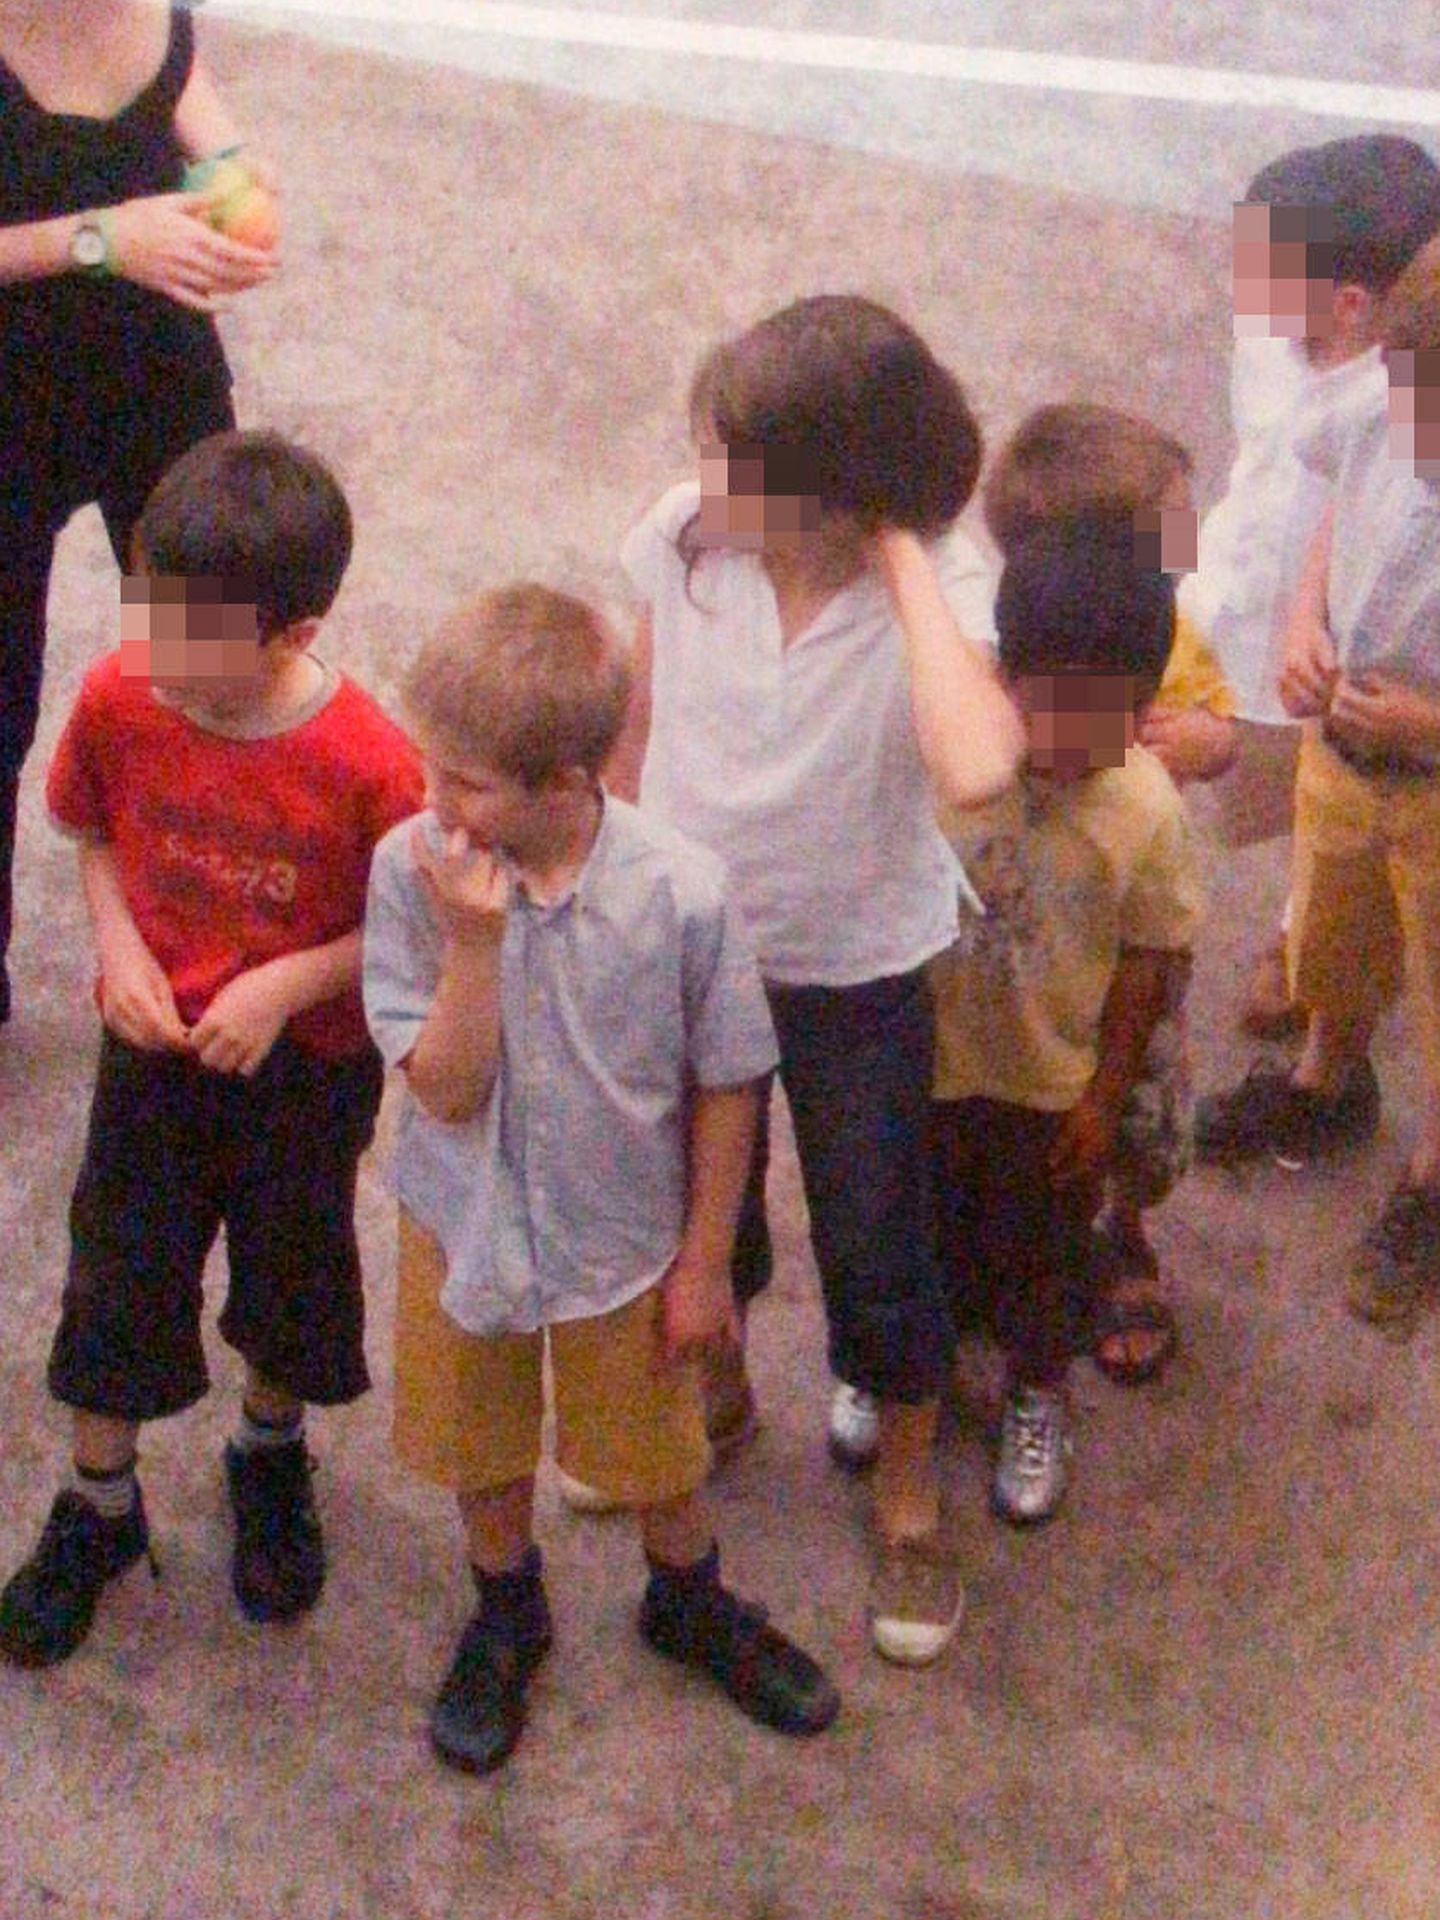 Juan Urdangarin, de pequeño, en una fiesta. (Vanitatis)